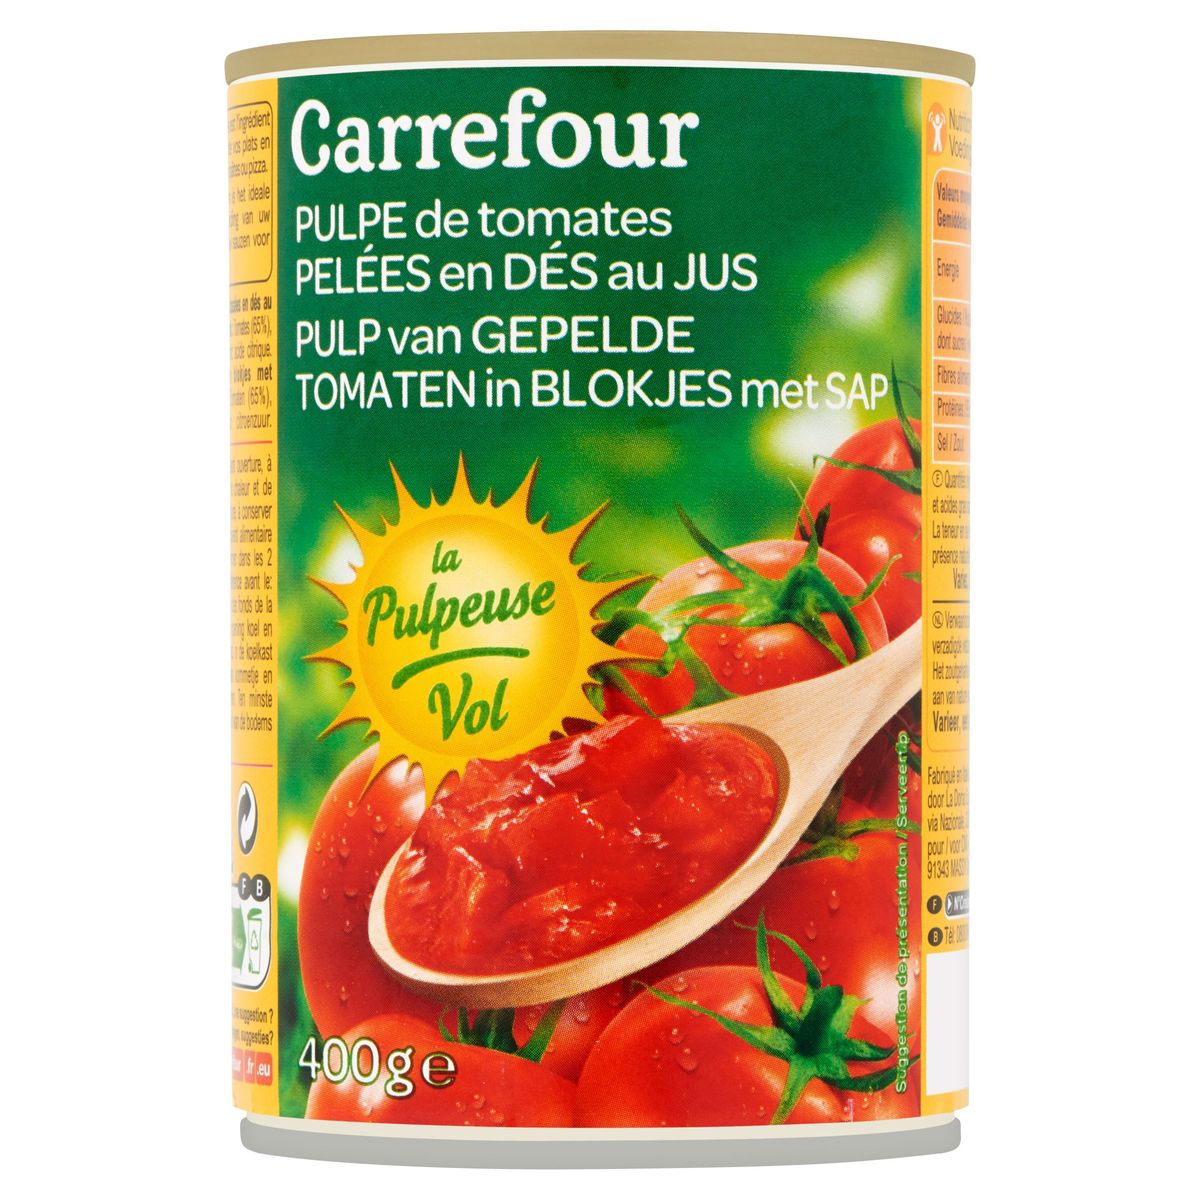 Carrefour Pulp van Gepelde Tomaten in Blokjes met Sap 400 g